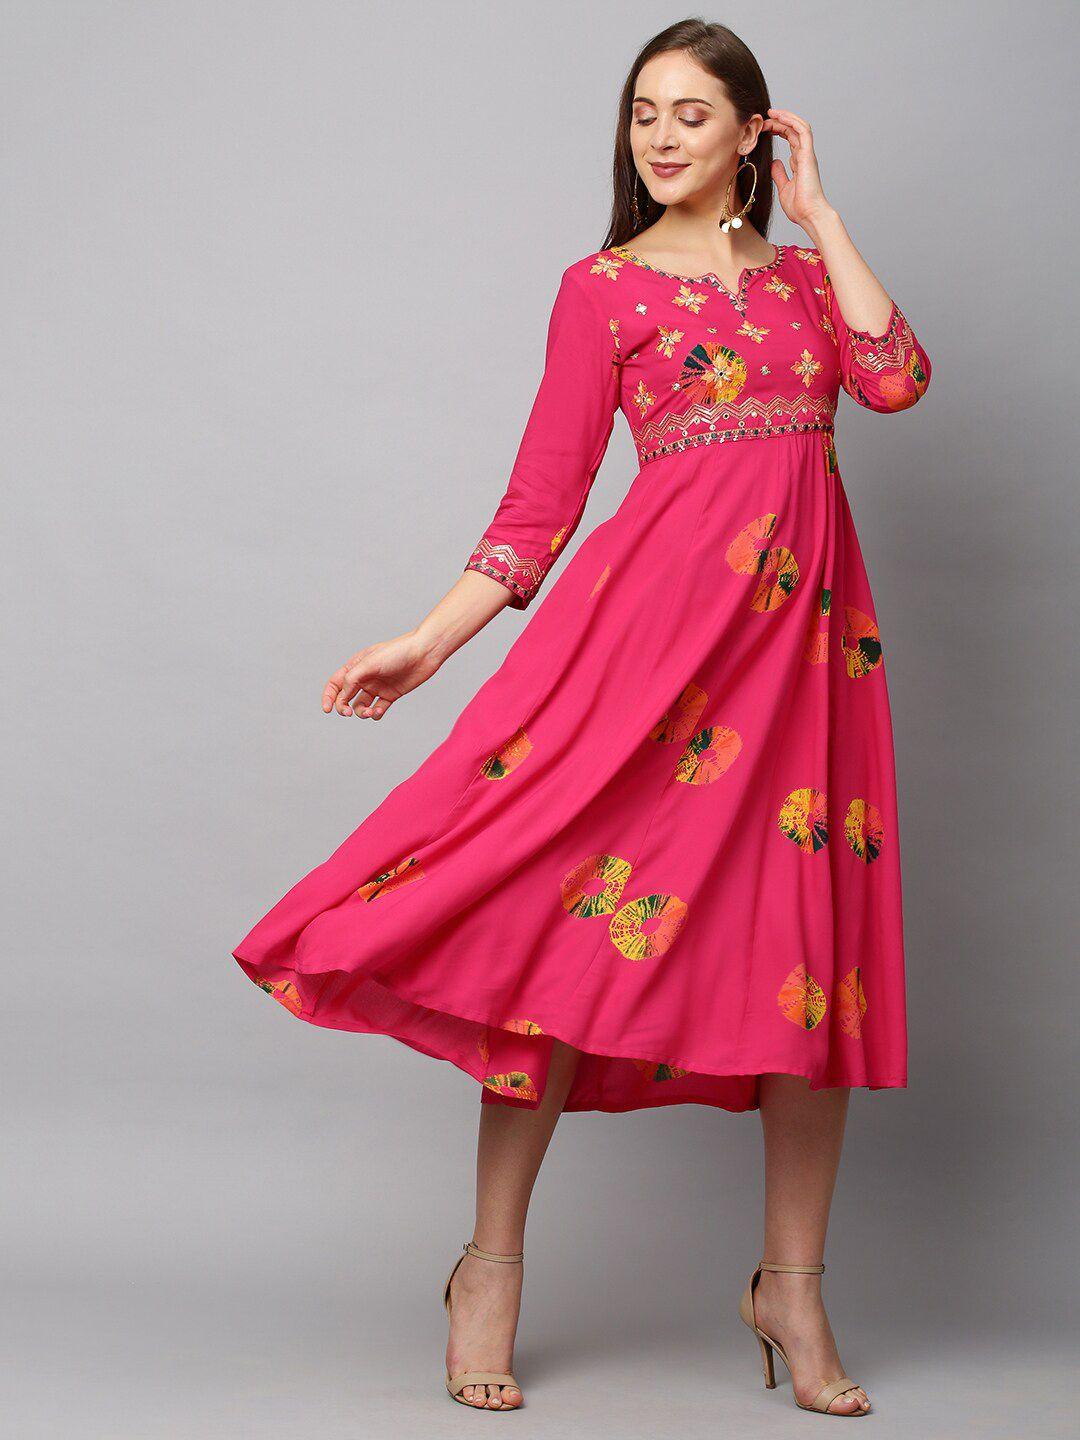 fashor-pink-ethnic-motifs-empire-midi-dress